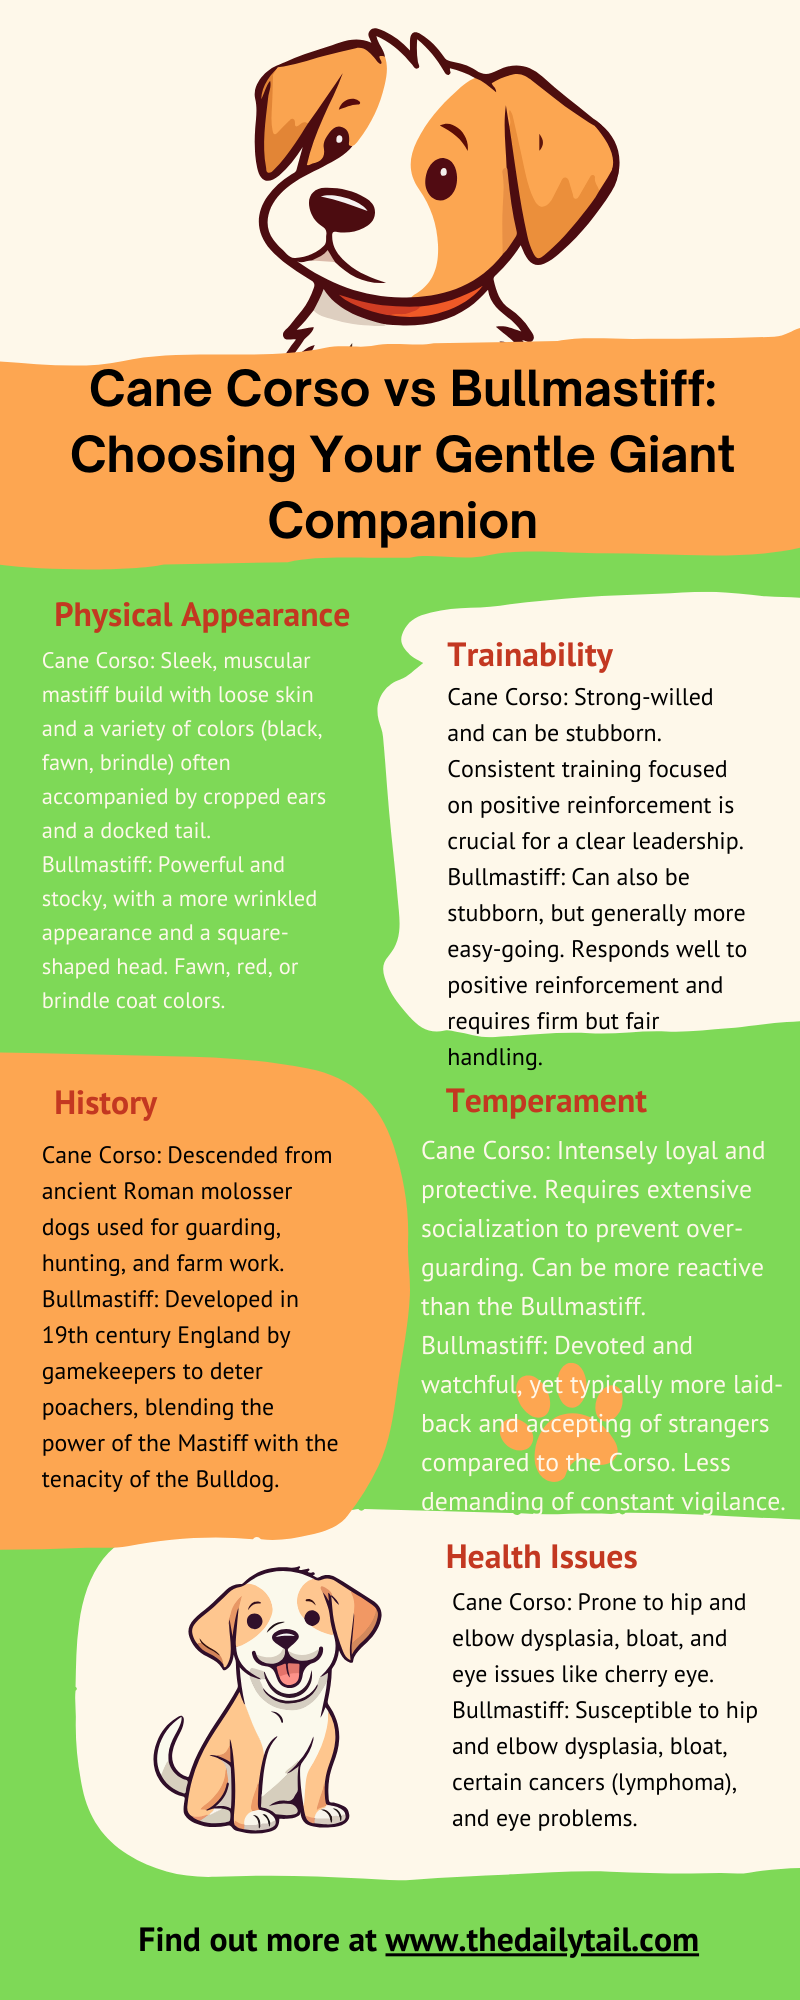 cane corso vs bullmastiff infographic